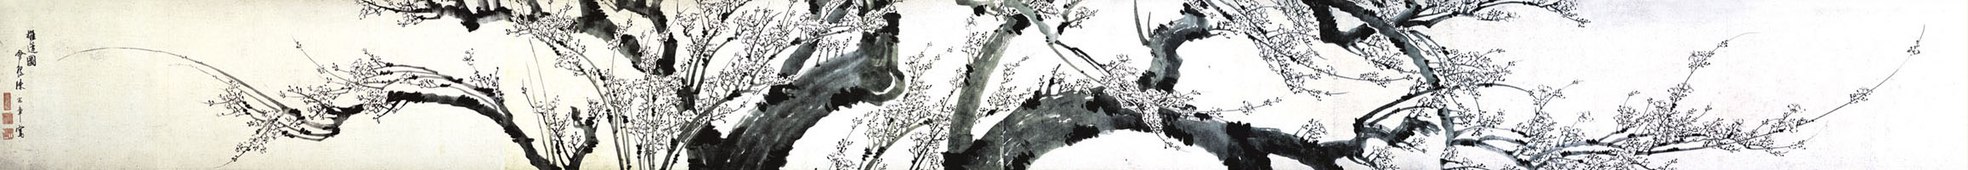 Tros pruimenbloesem, handrol met gewassen inkt op papier, collectie Provinciaal Museum van Hunan[2]